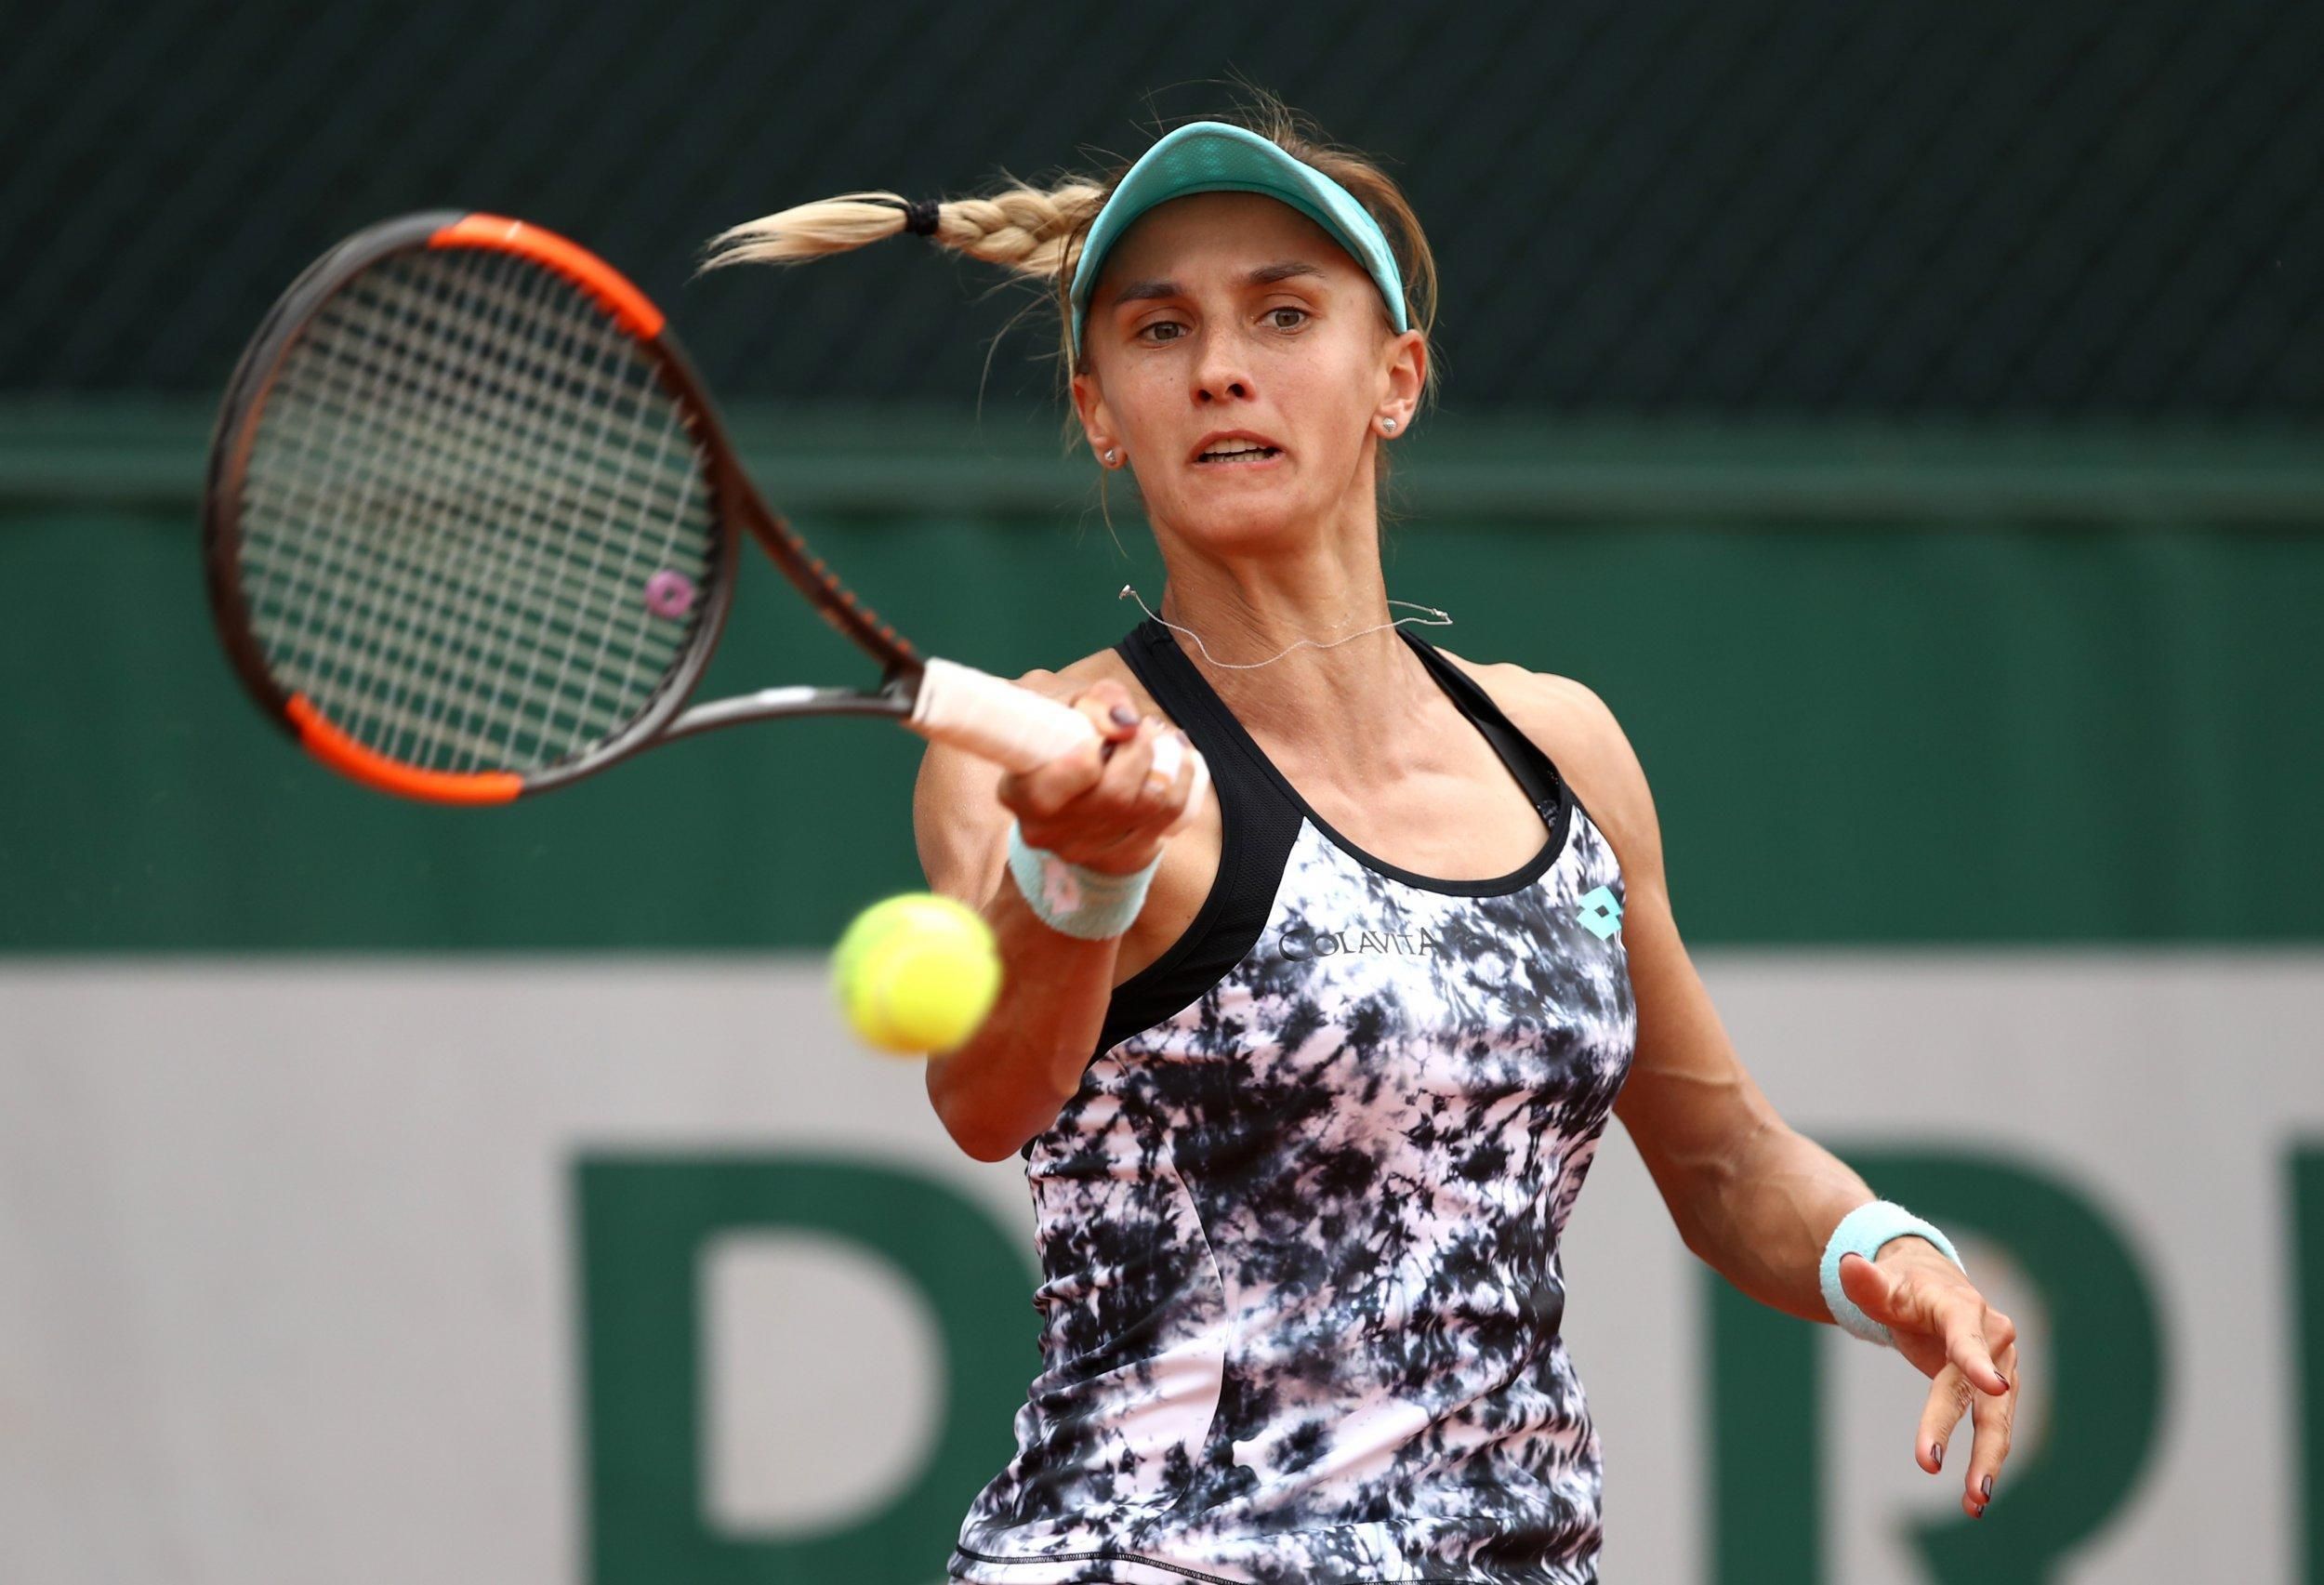 Цуренко в финале проиграла россиянке, остановившись в шаге от основной сетки Australian Open